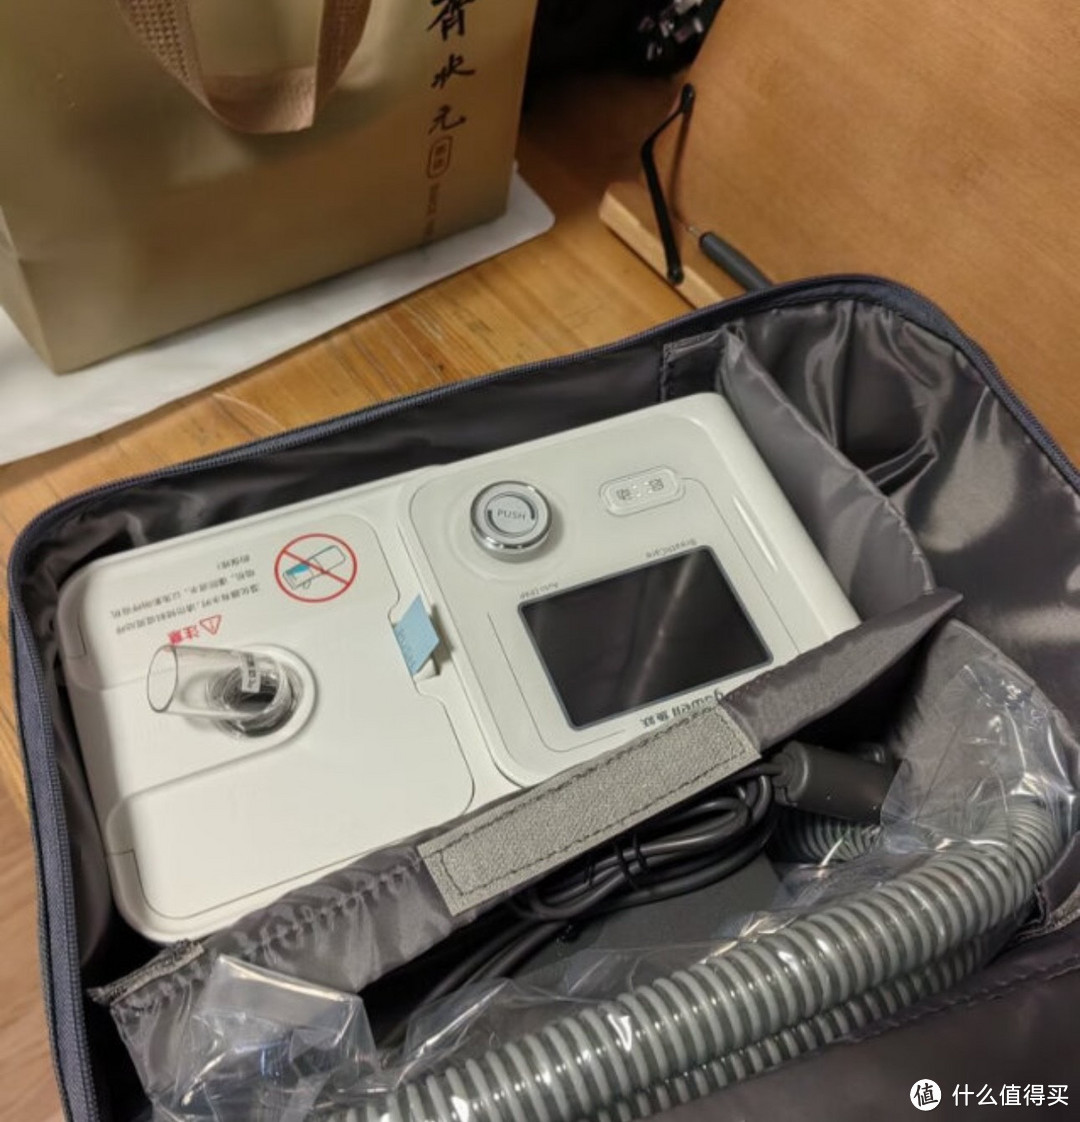 ￼￼鱼跃(YUWELL)全自动睡眠呼吸机YH-560 无创智能调压降噪 家用医用呼吸器打鼾打呼噜￼￼